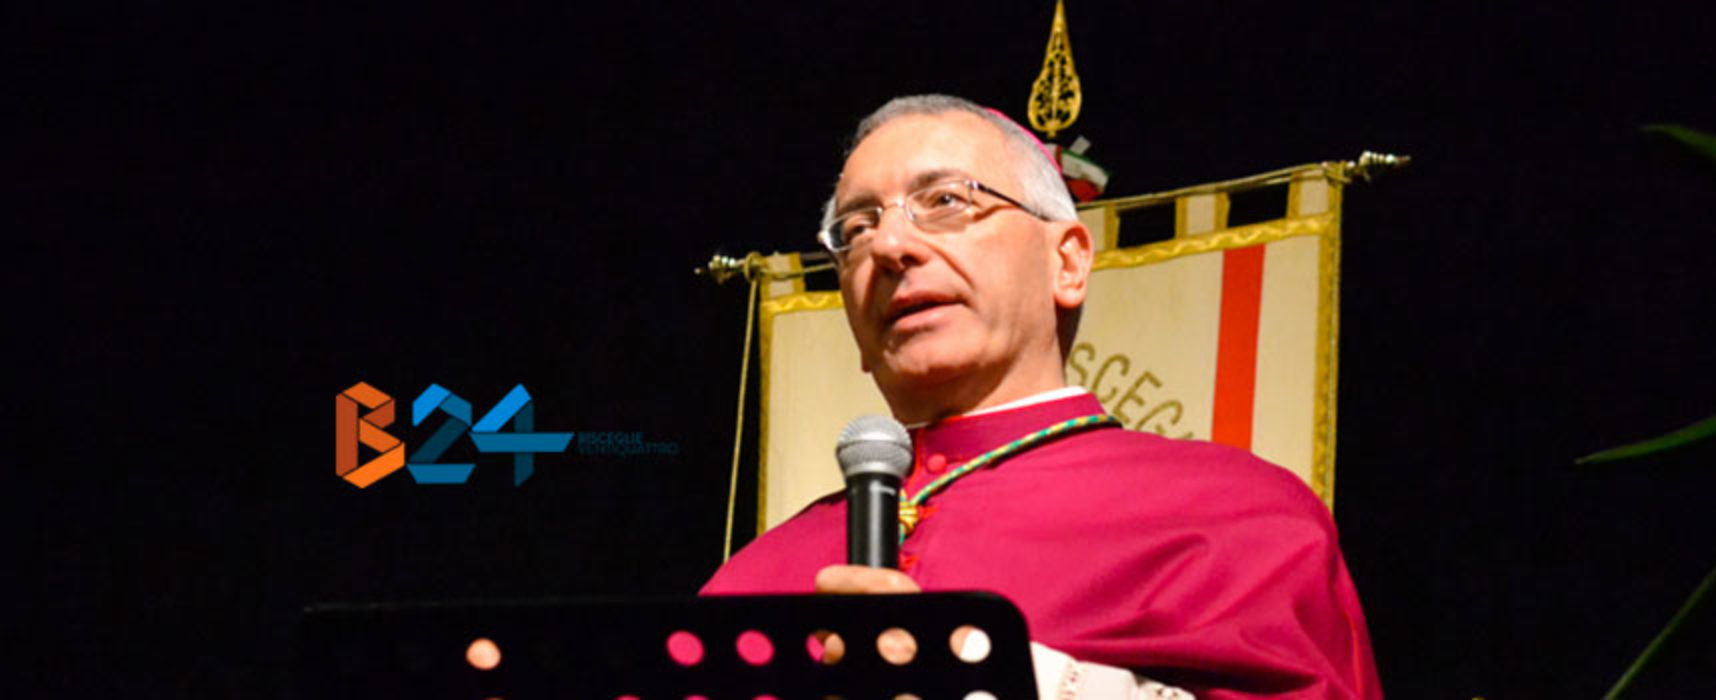 “Seminatori di speranza, fratelli tutti”: all’Epass incontro con l’Arcivescovo D’Ascenzo 